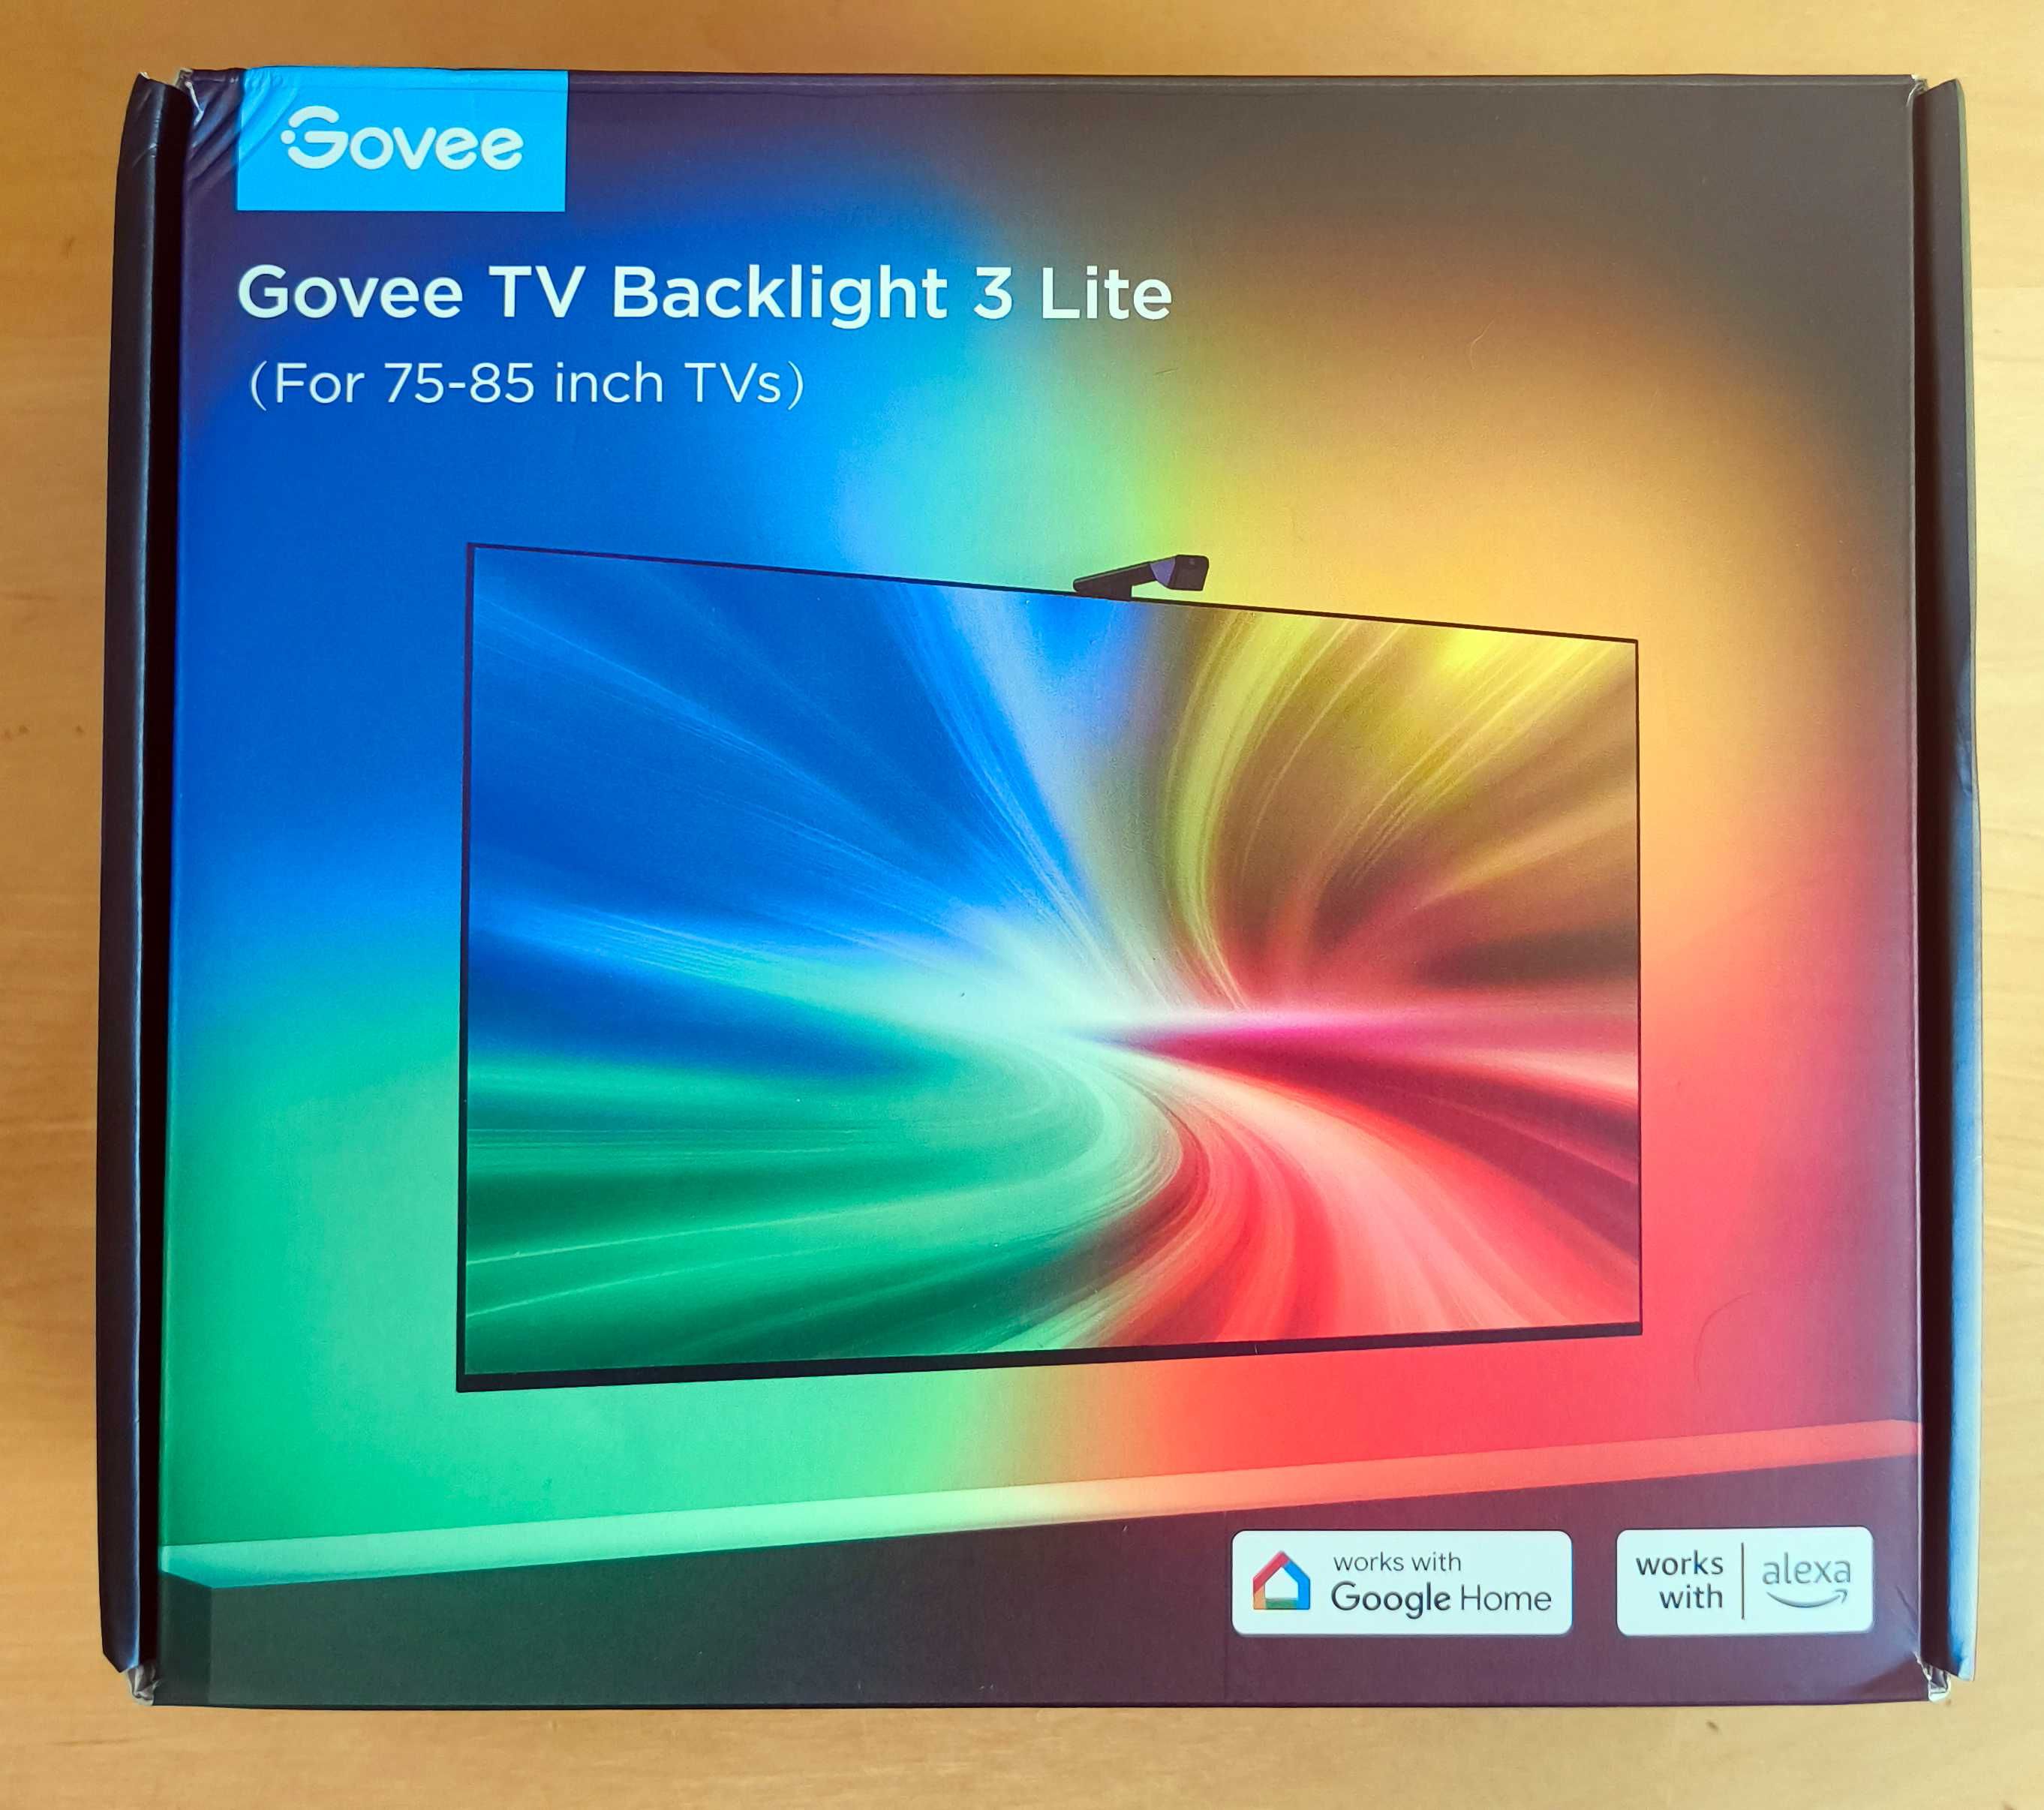 Luz ambilight para TV de 75 a 85 - Govee TV Backlight 3 Lite